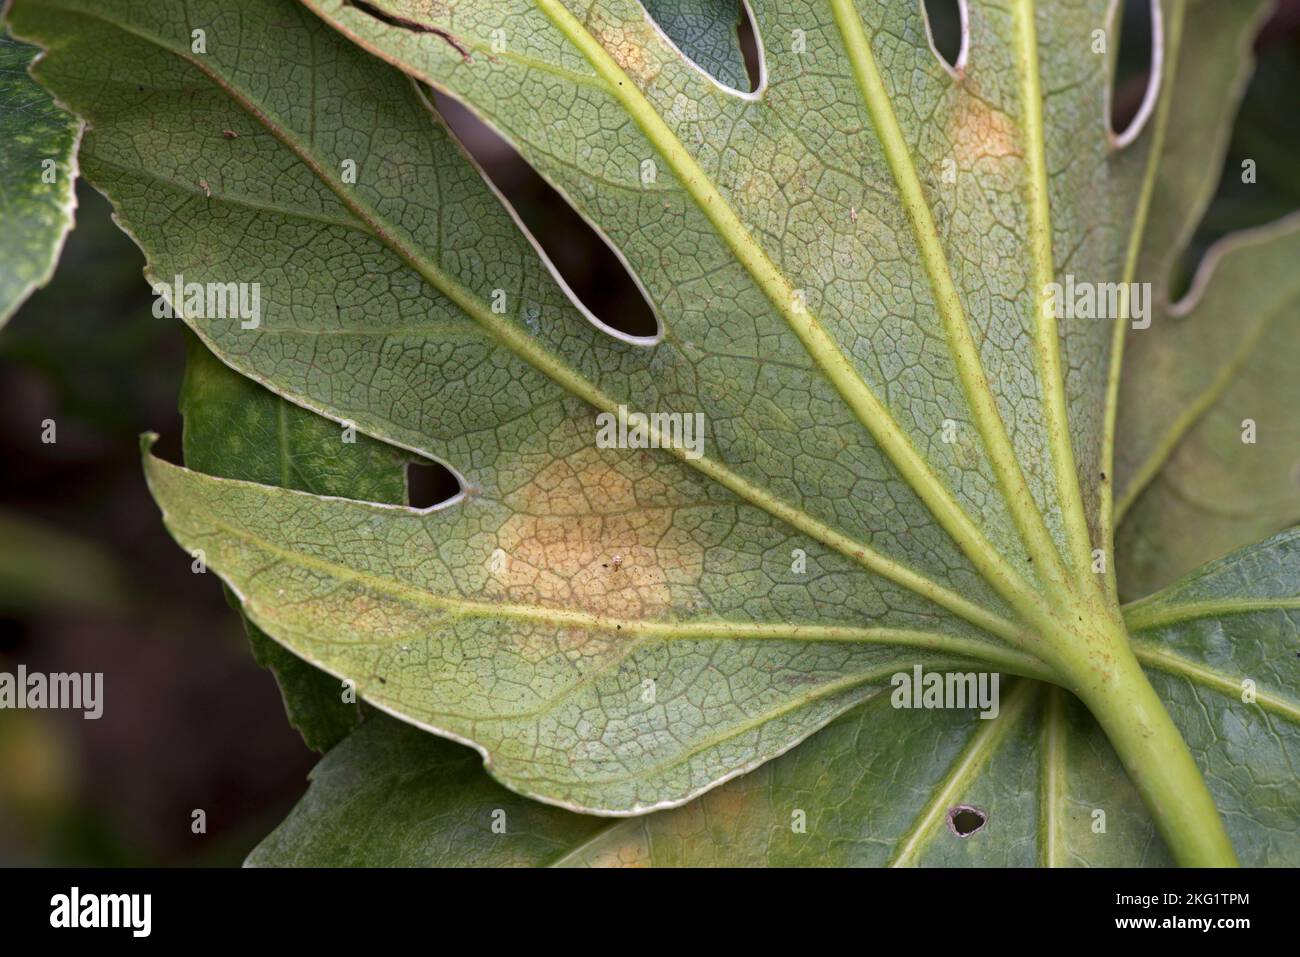 Type d'acarien cloque dommages à la face inférieure d'une Fatsia japonica, un jardin ornemental, feuille variégée, la cause exacte n'est pas connue, octobre Banque D'Images